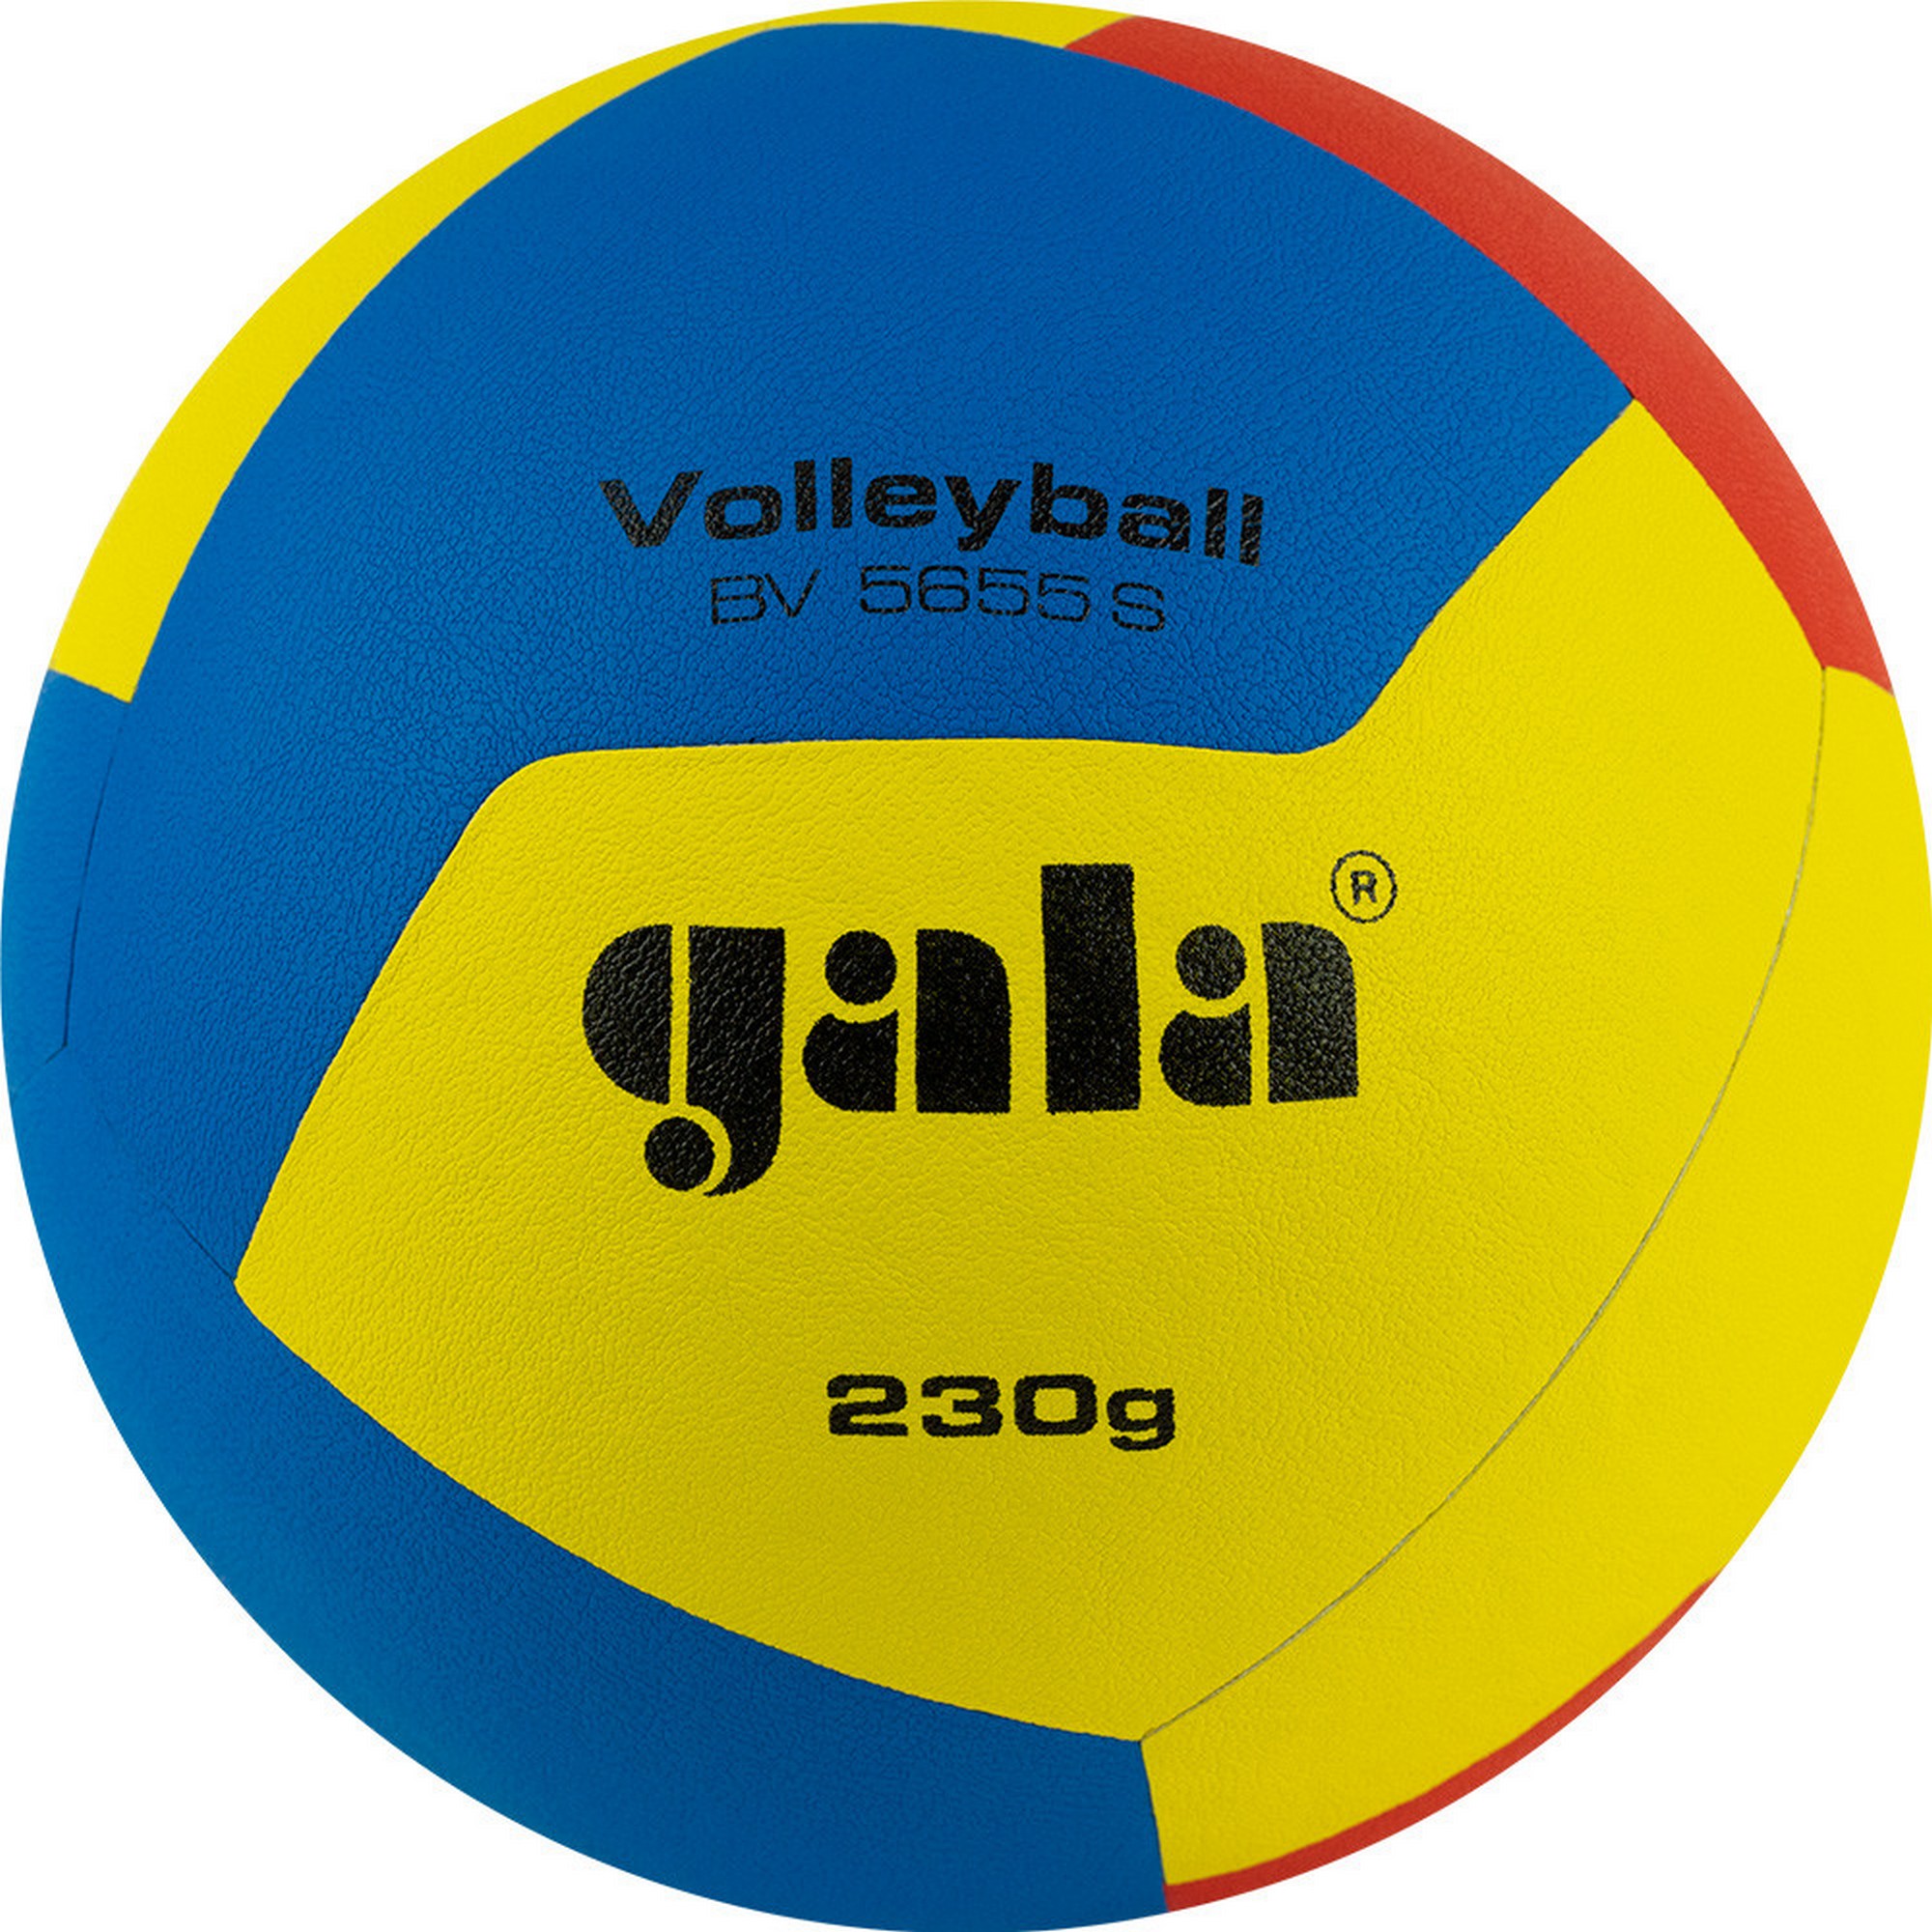 Купить Мяч волейбольный Gala Training 230 12 BV5655S р. 5,